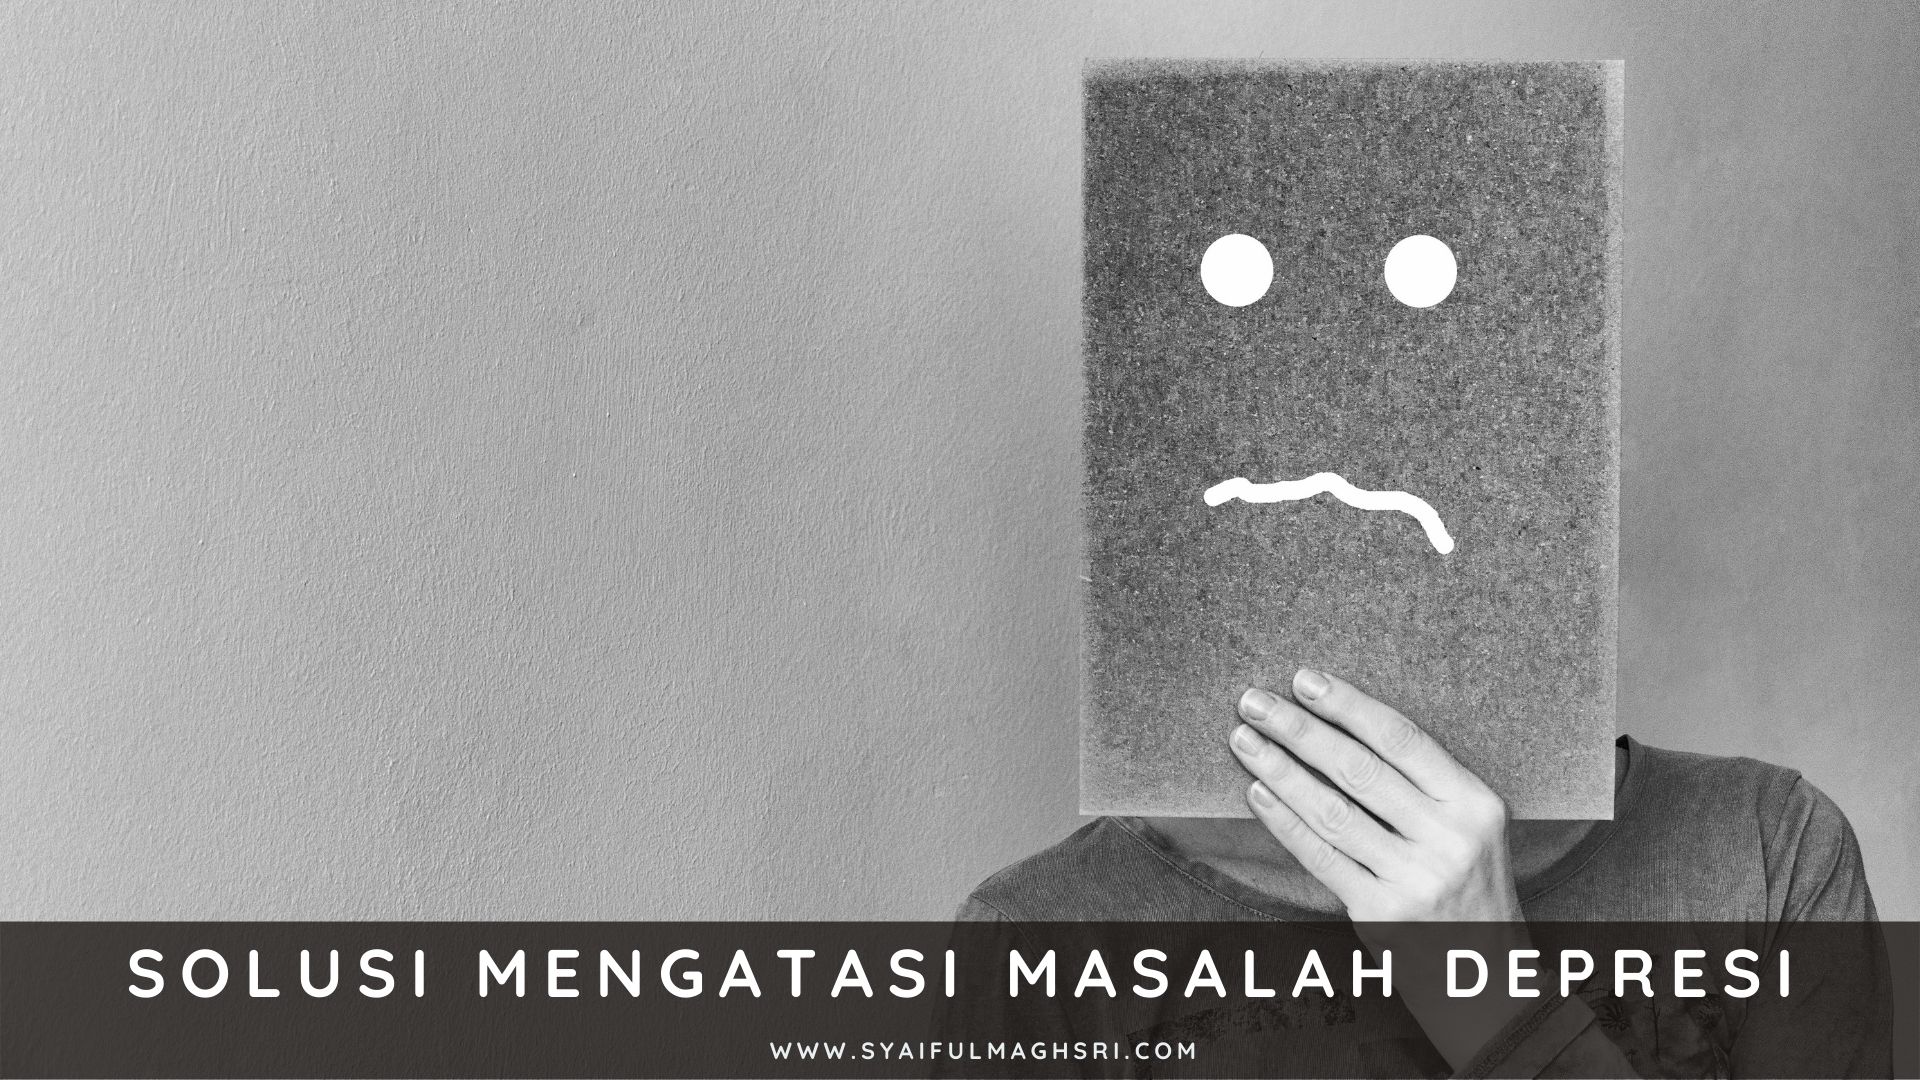 Solusi Mengatasi Masalah Depresi - Syaiful Maghsri.com